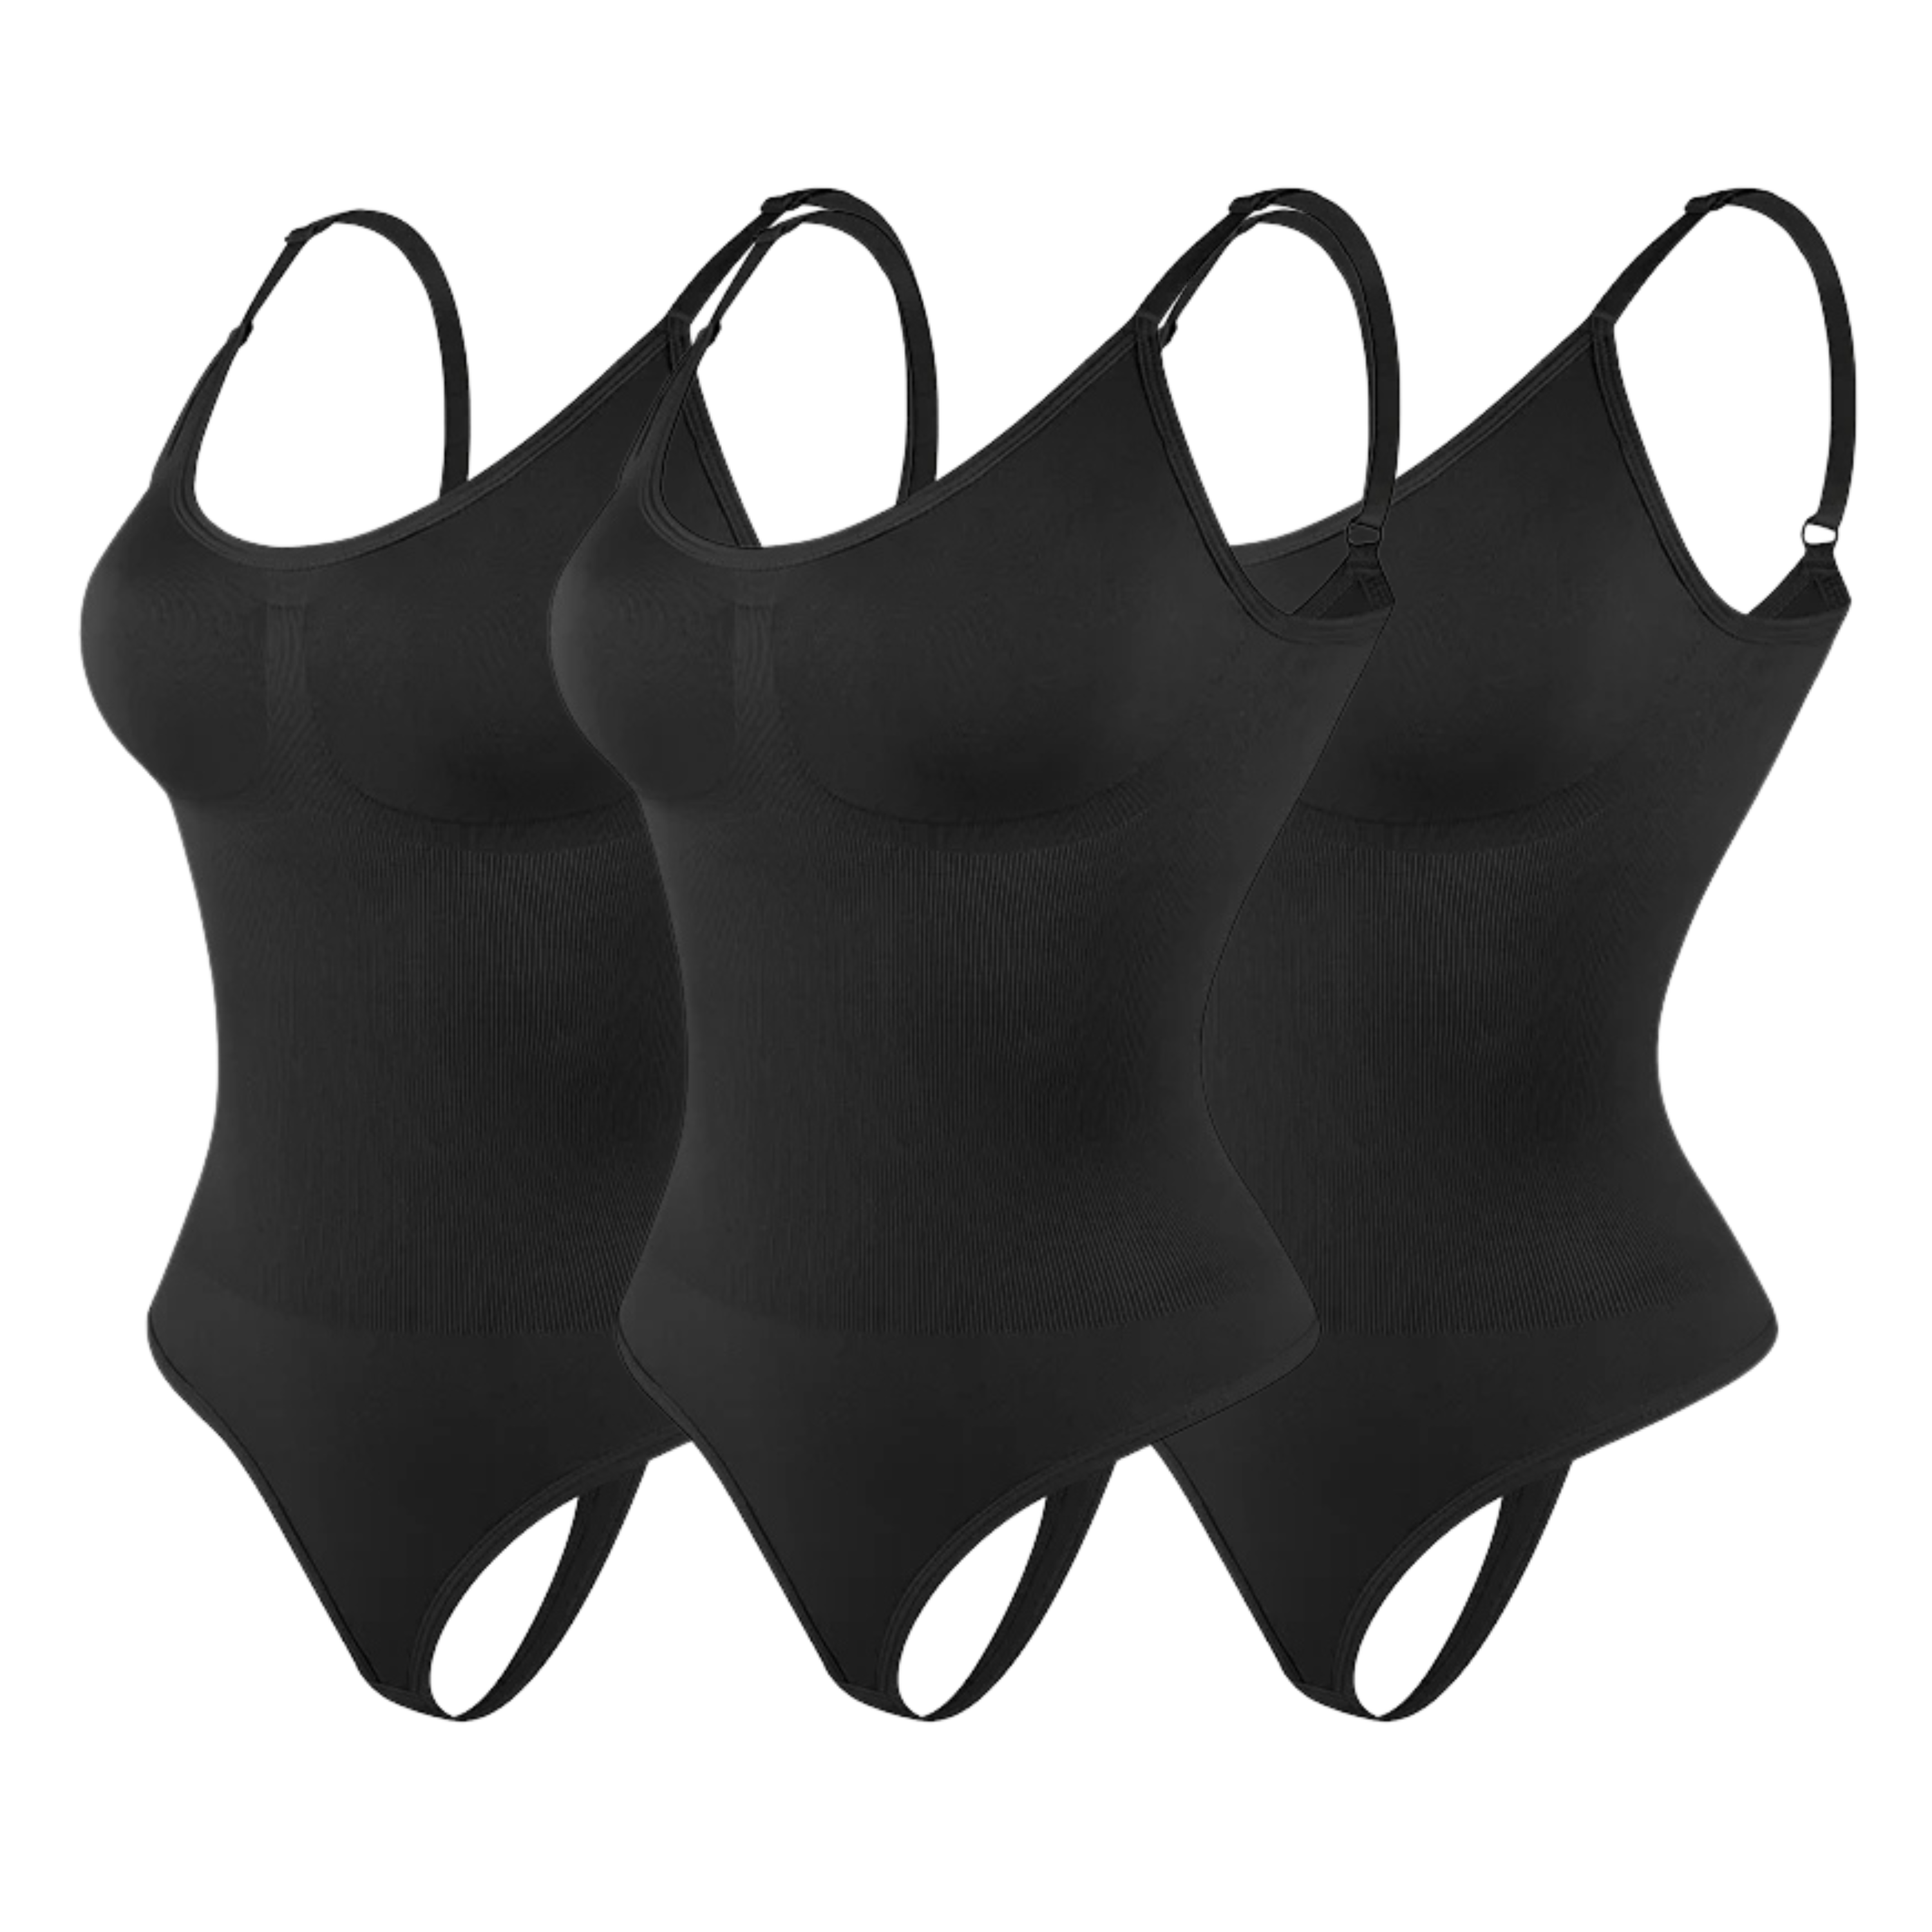 Snatched Bodysuit 3er-Pack (60 % sparen) 